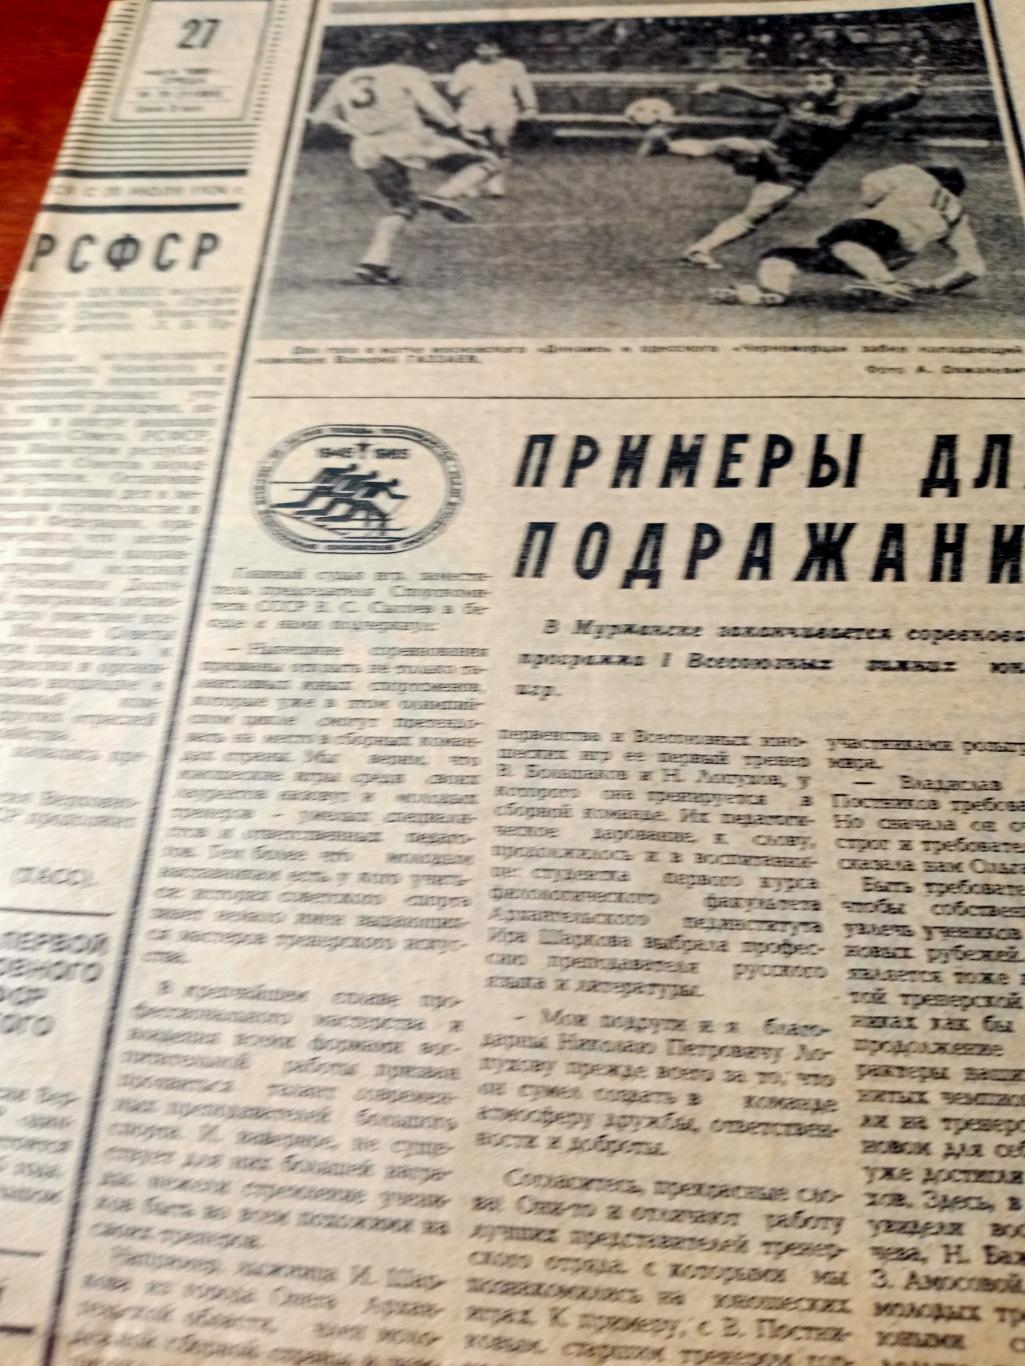 Футбольный выпуск. Советский спорт. 1985 год. 27 марта